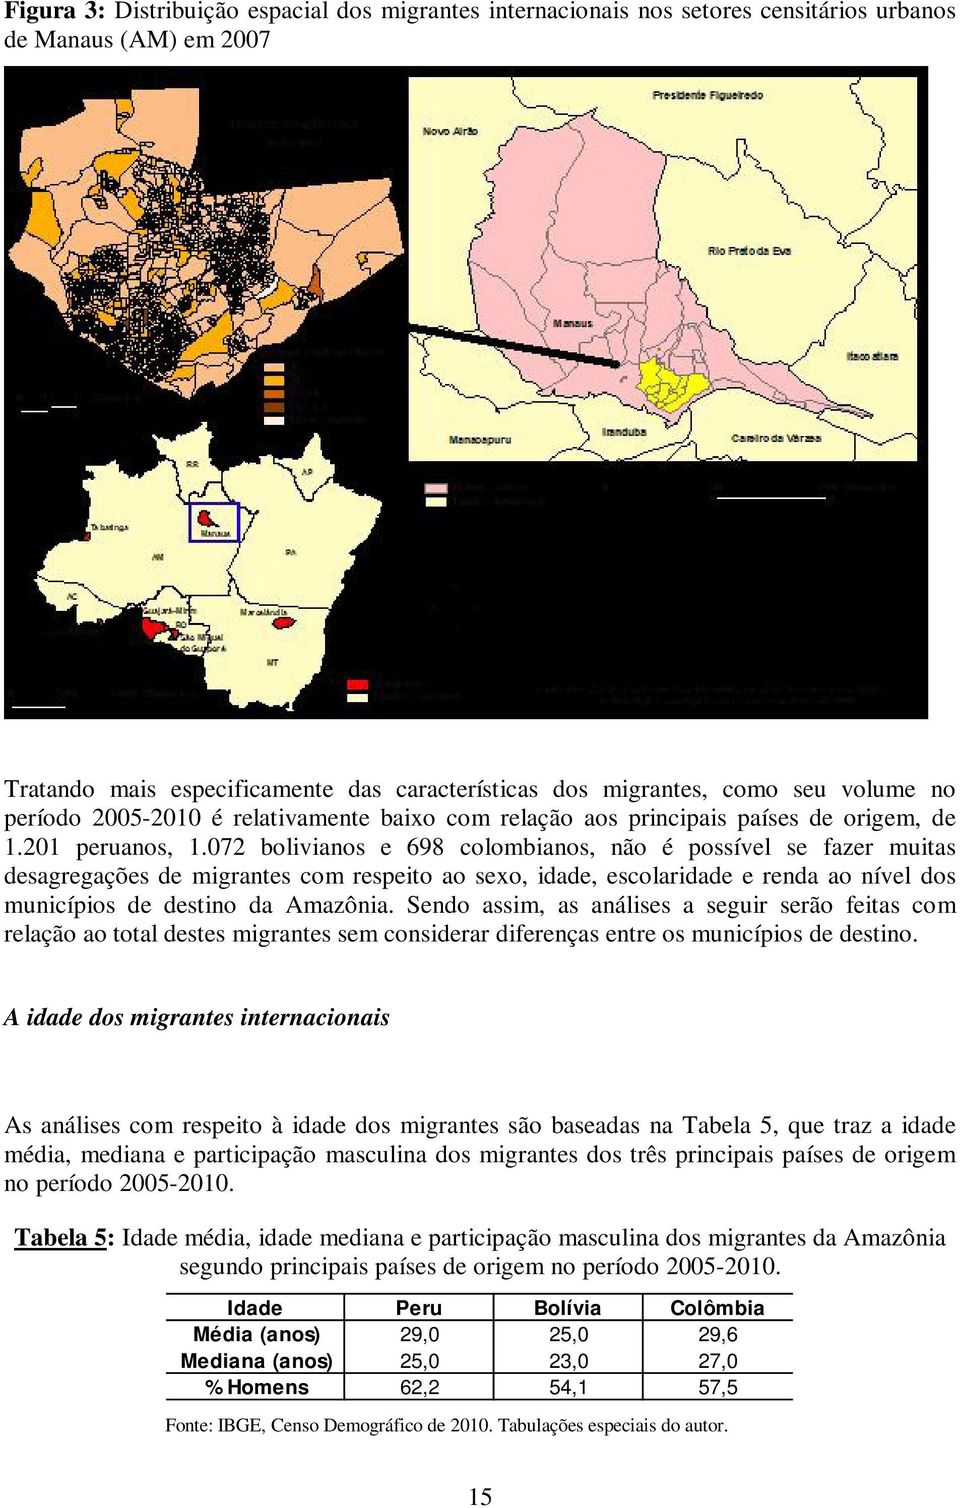 072 bolivianos e 698 colombianos, não é possível se fazer muitas desagregações de migrantes com respeito ao sexo, idade, escolaridade e renda ao nível dos municípios de destino da Amazônia.